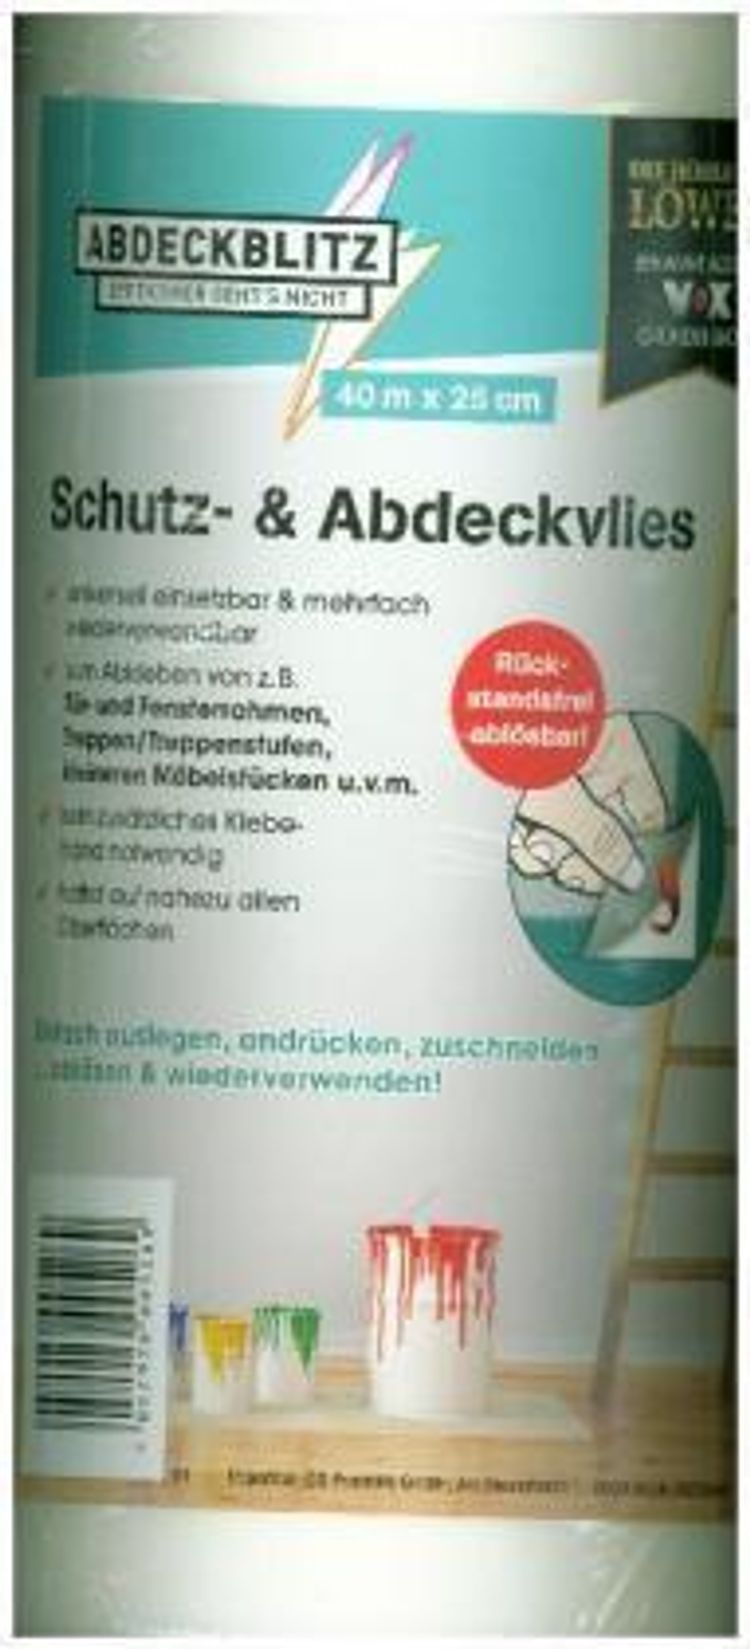 Abdeckblitz, Schutz- & Abdeckvlies 0,25 x 40 m | Weltbild.at